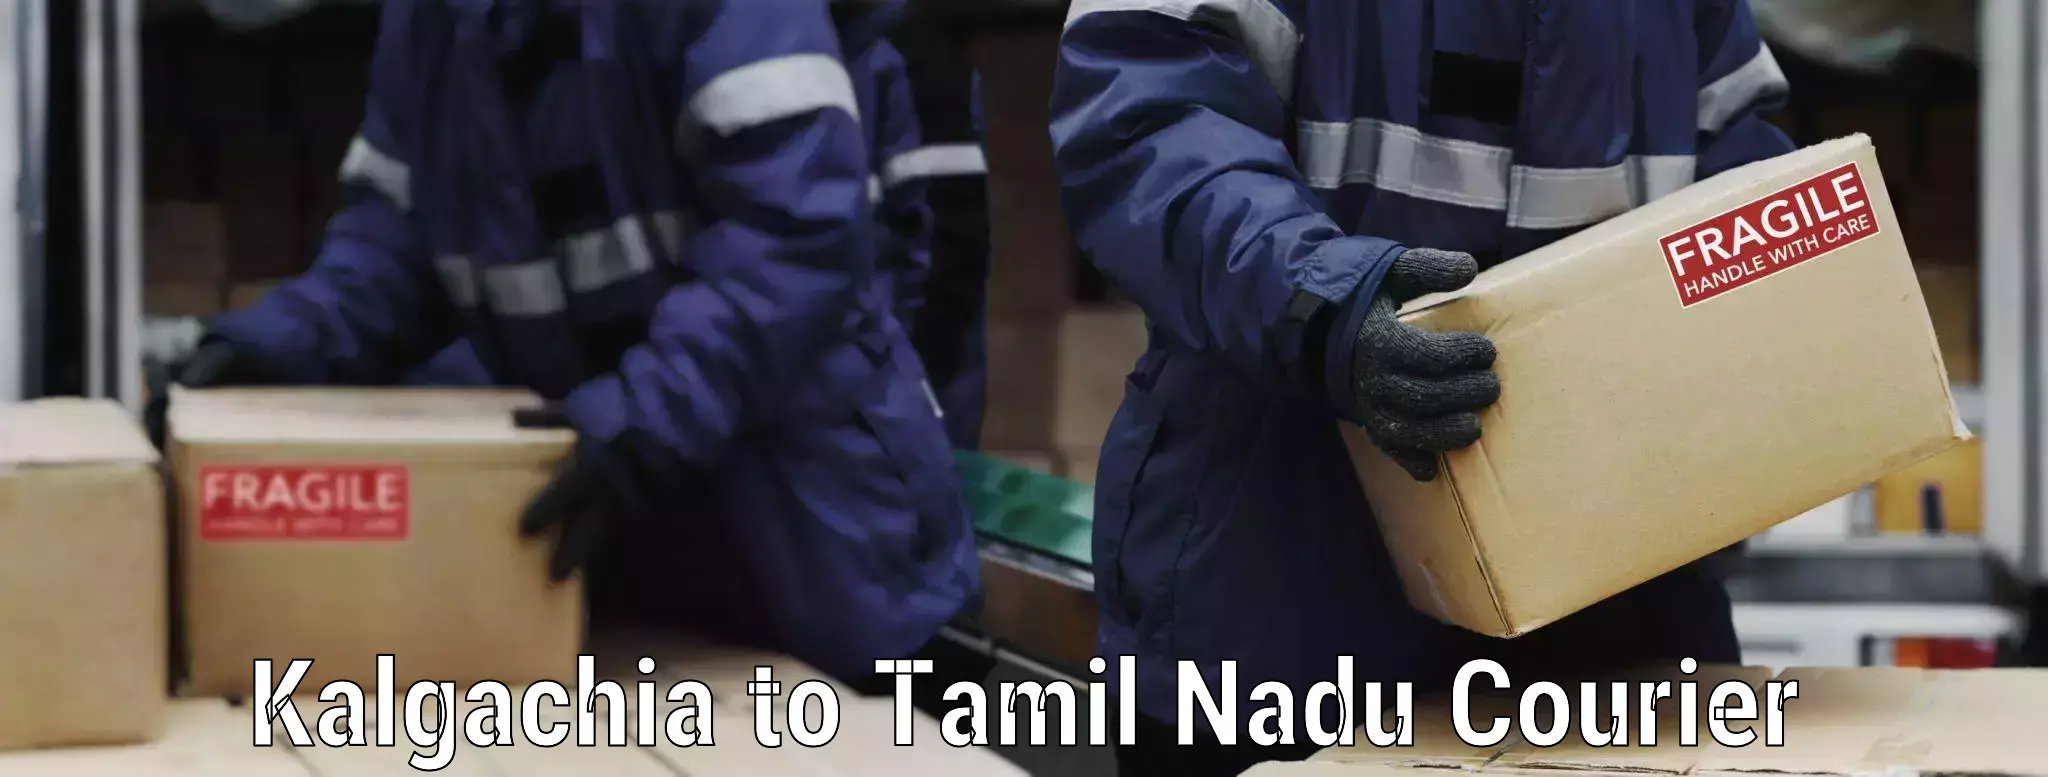 Affordable moving solutions Kalgachia to Tamil Nadu